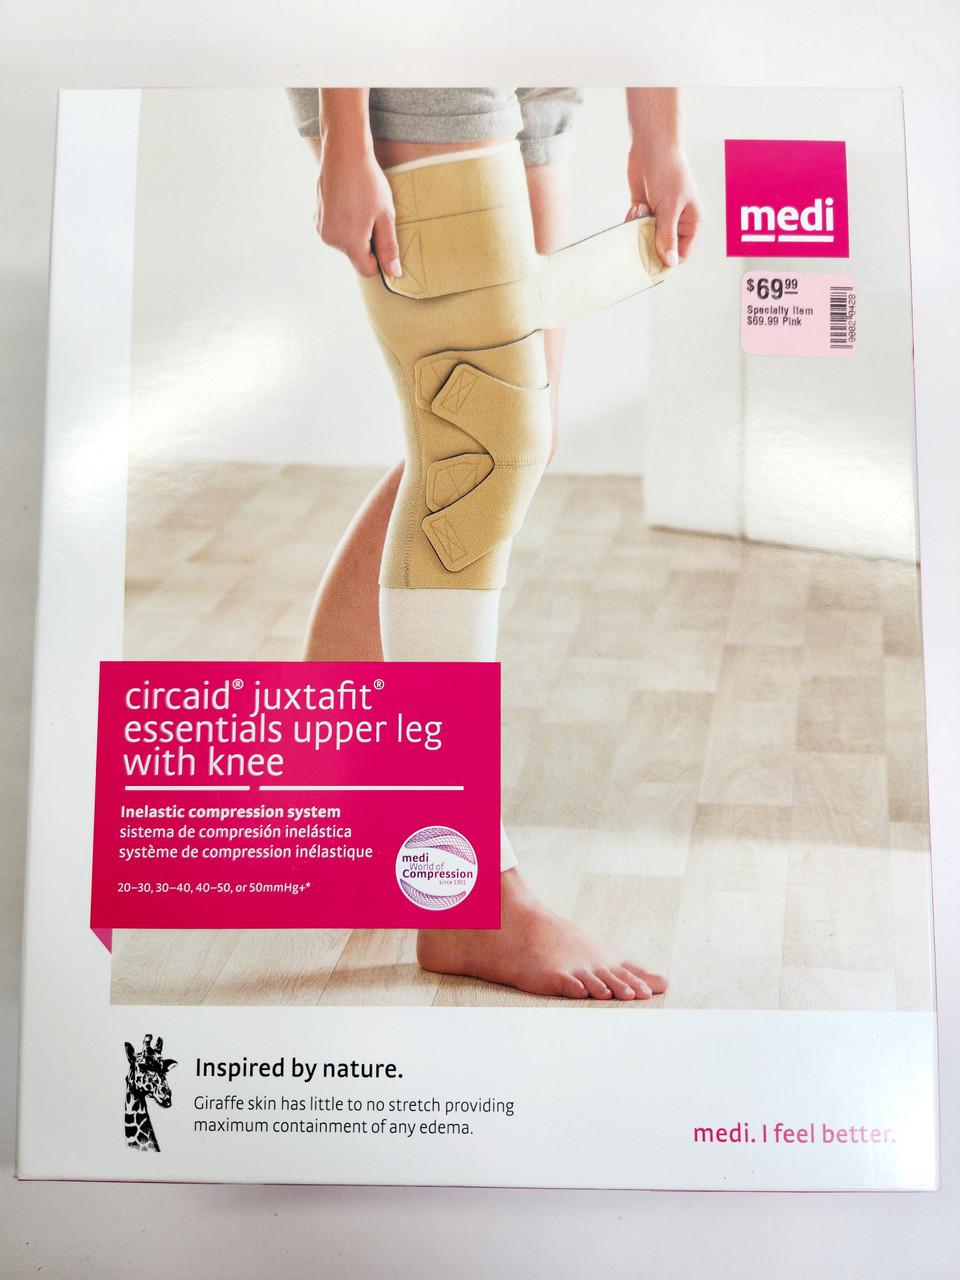 MEDI Circaid Juxtafit Essentials Upper Leg with Knee Compression System -  Father Joe's Villages